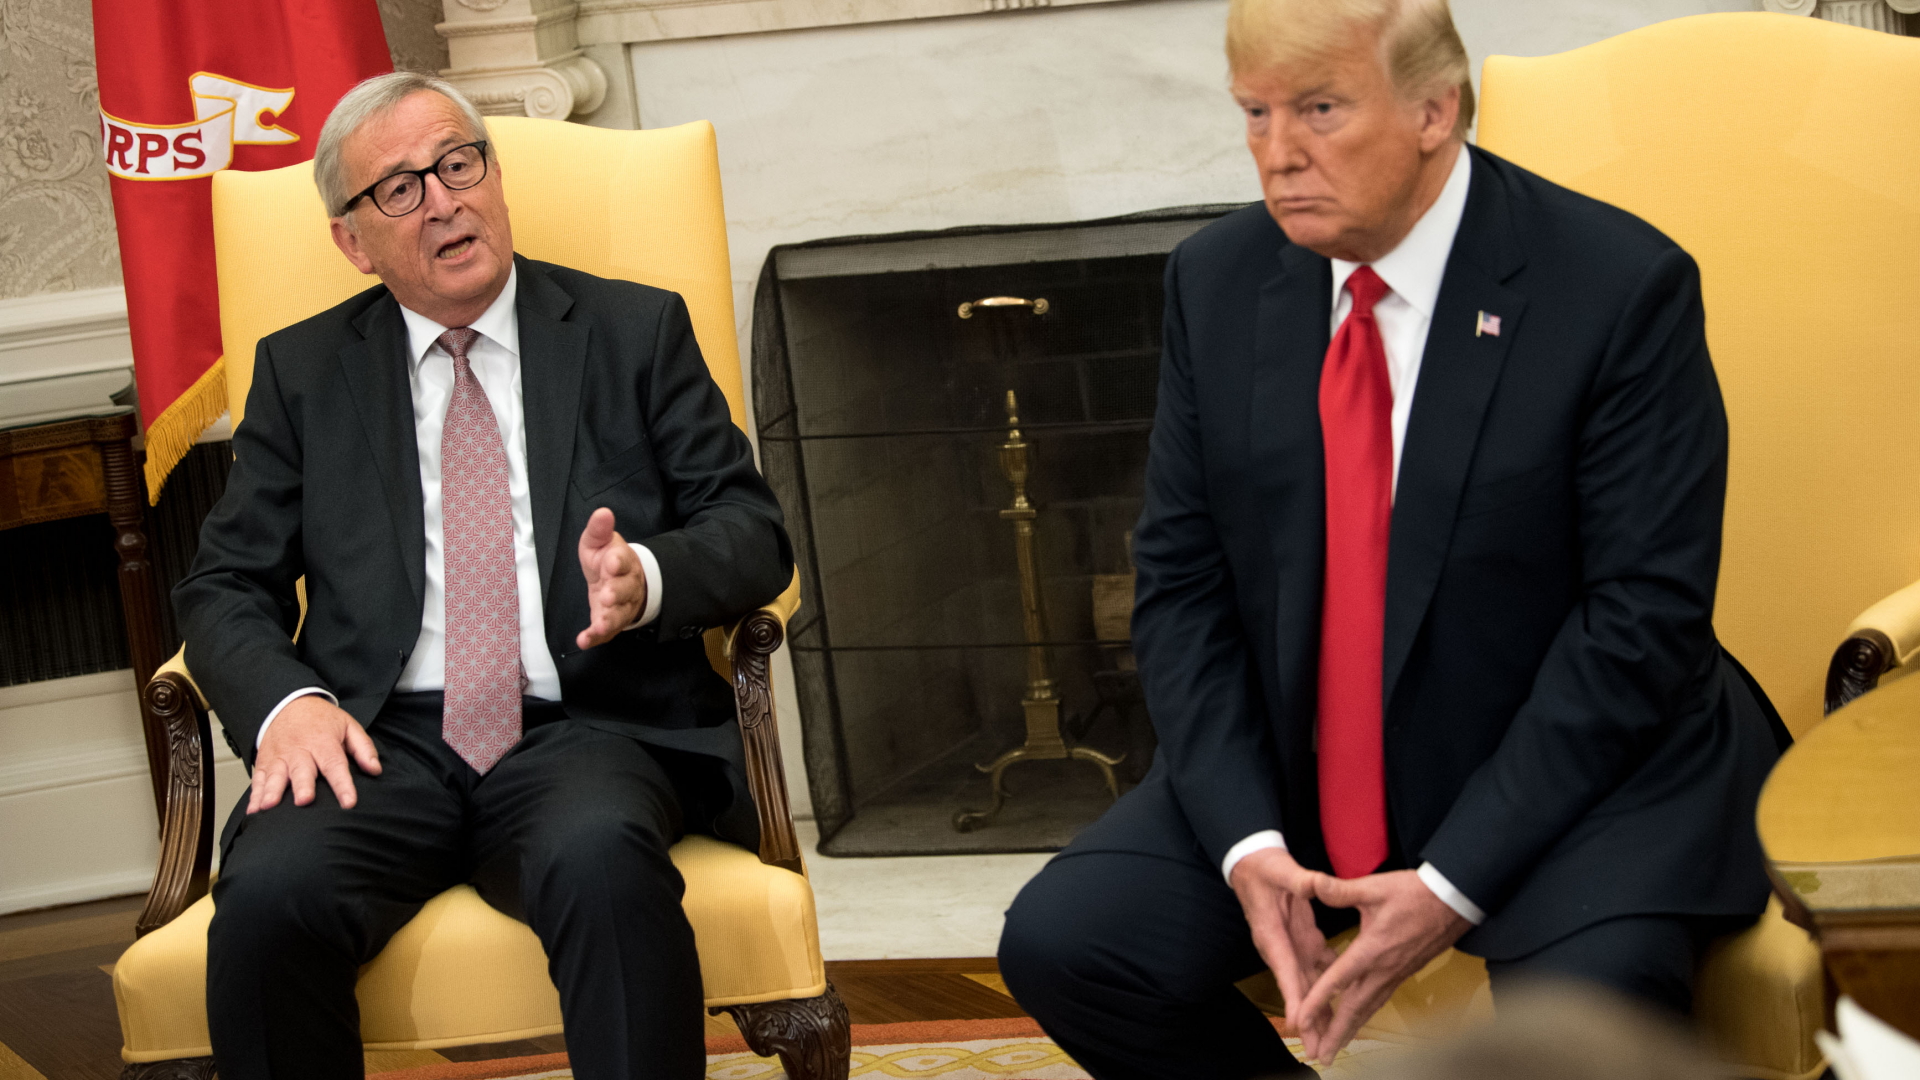 EU-Kommissionspräsident Juncker und US-Präsident Trump | KEVIN DIETSCH/POOL/EPA-EFE/REX/S